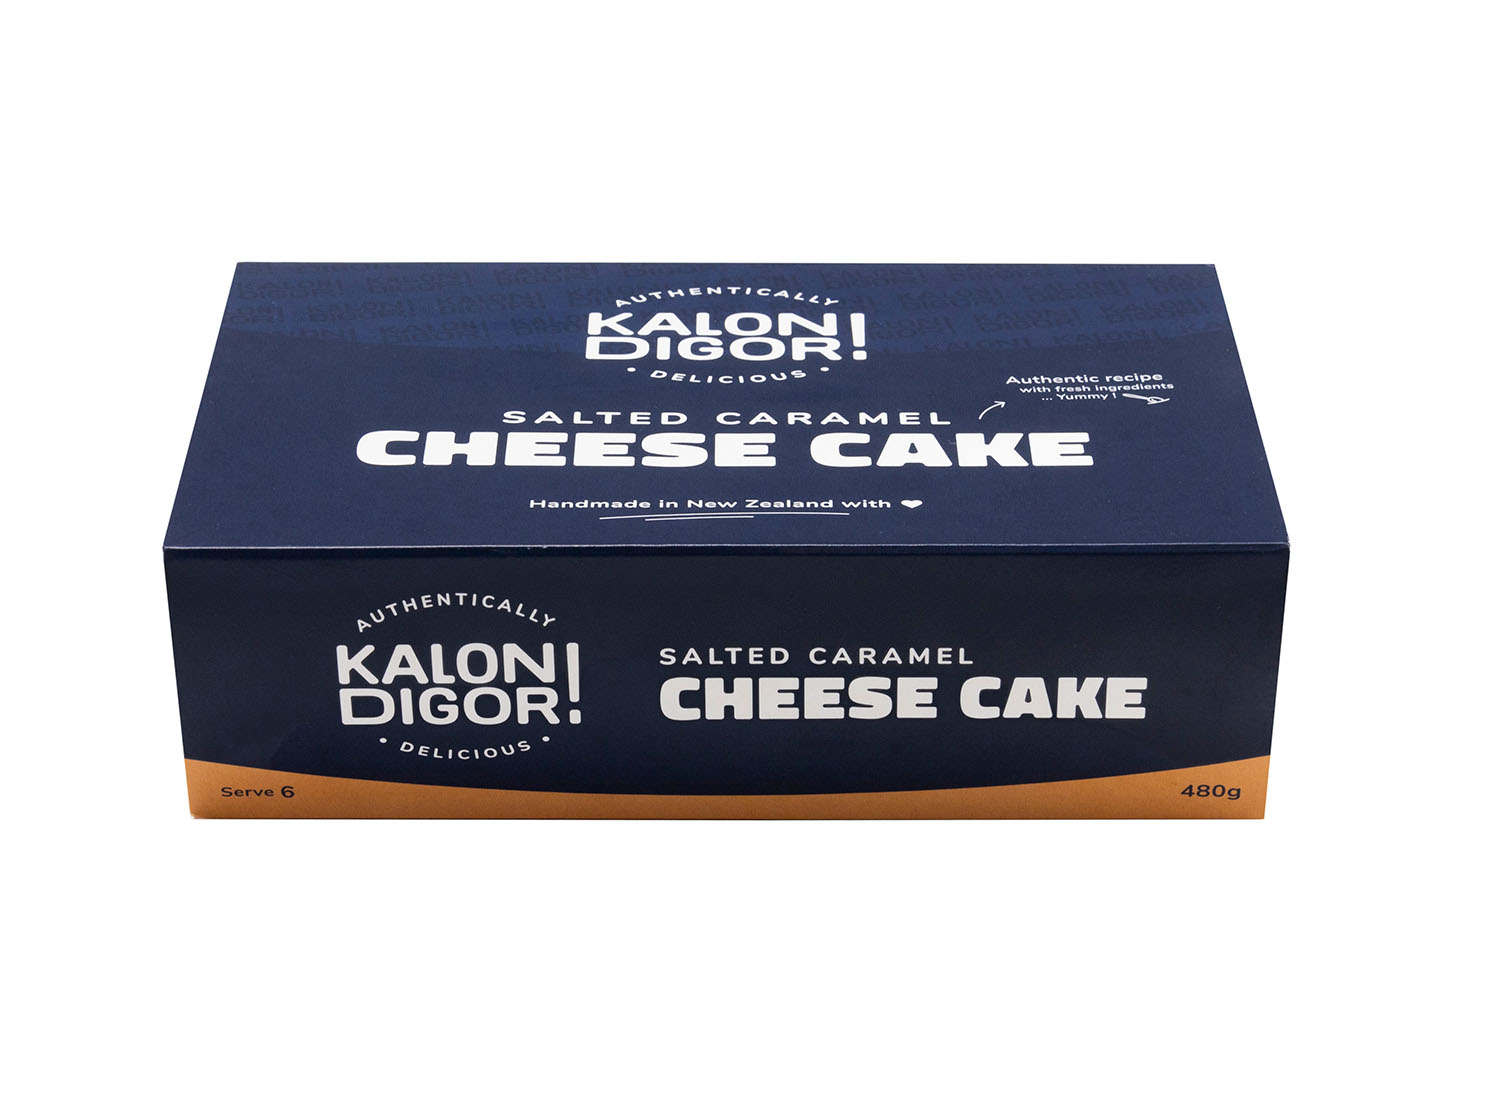 Kalon Digor Salted Caramel Cheese Cake in packaging